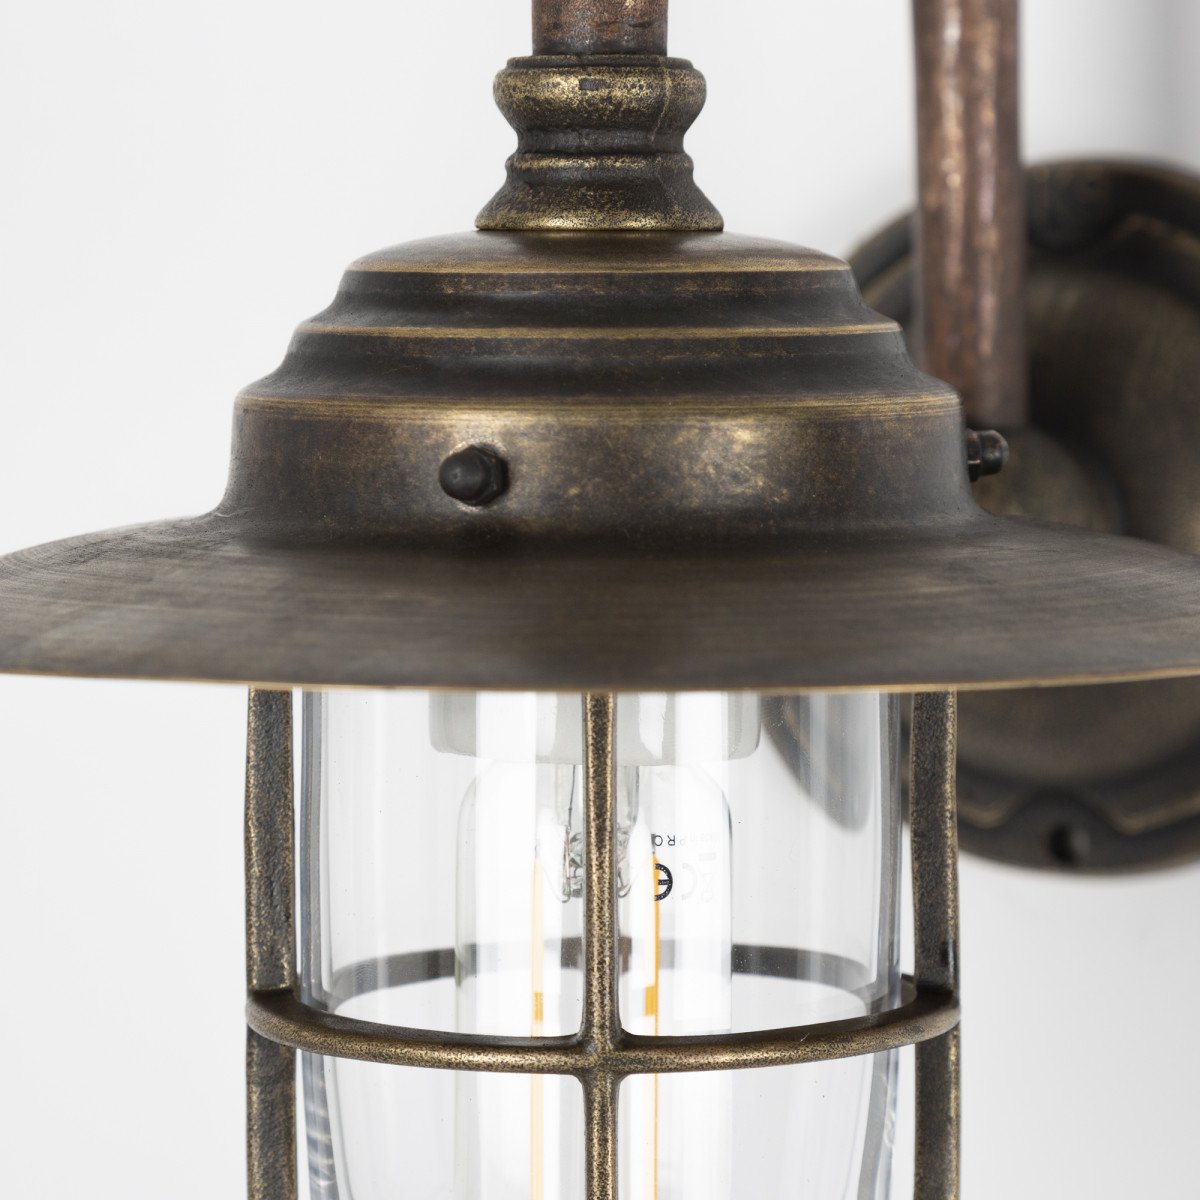 Applique d'extérieur style écurie Barro (5738) cuivre & bronze de KS Lighting